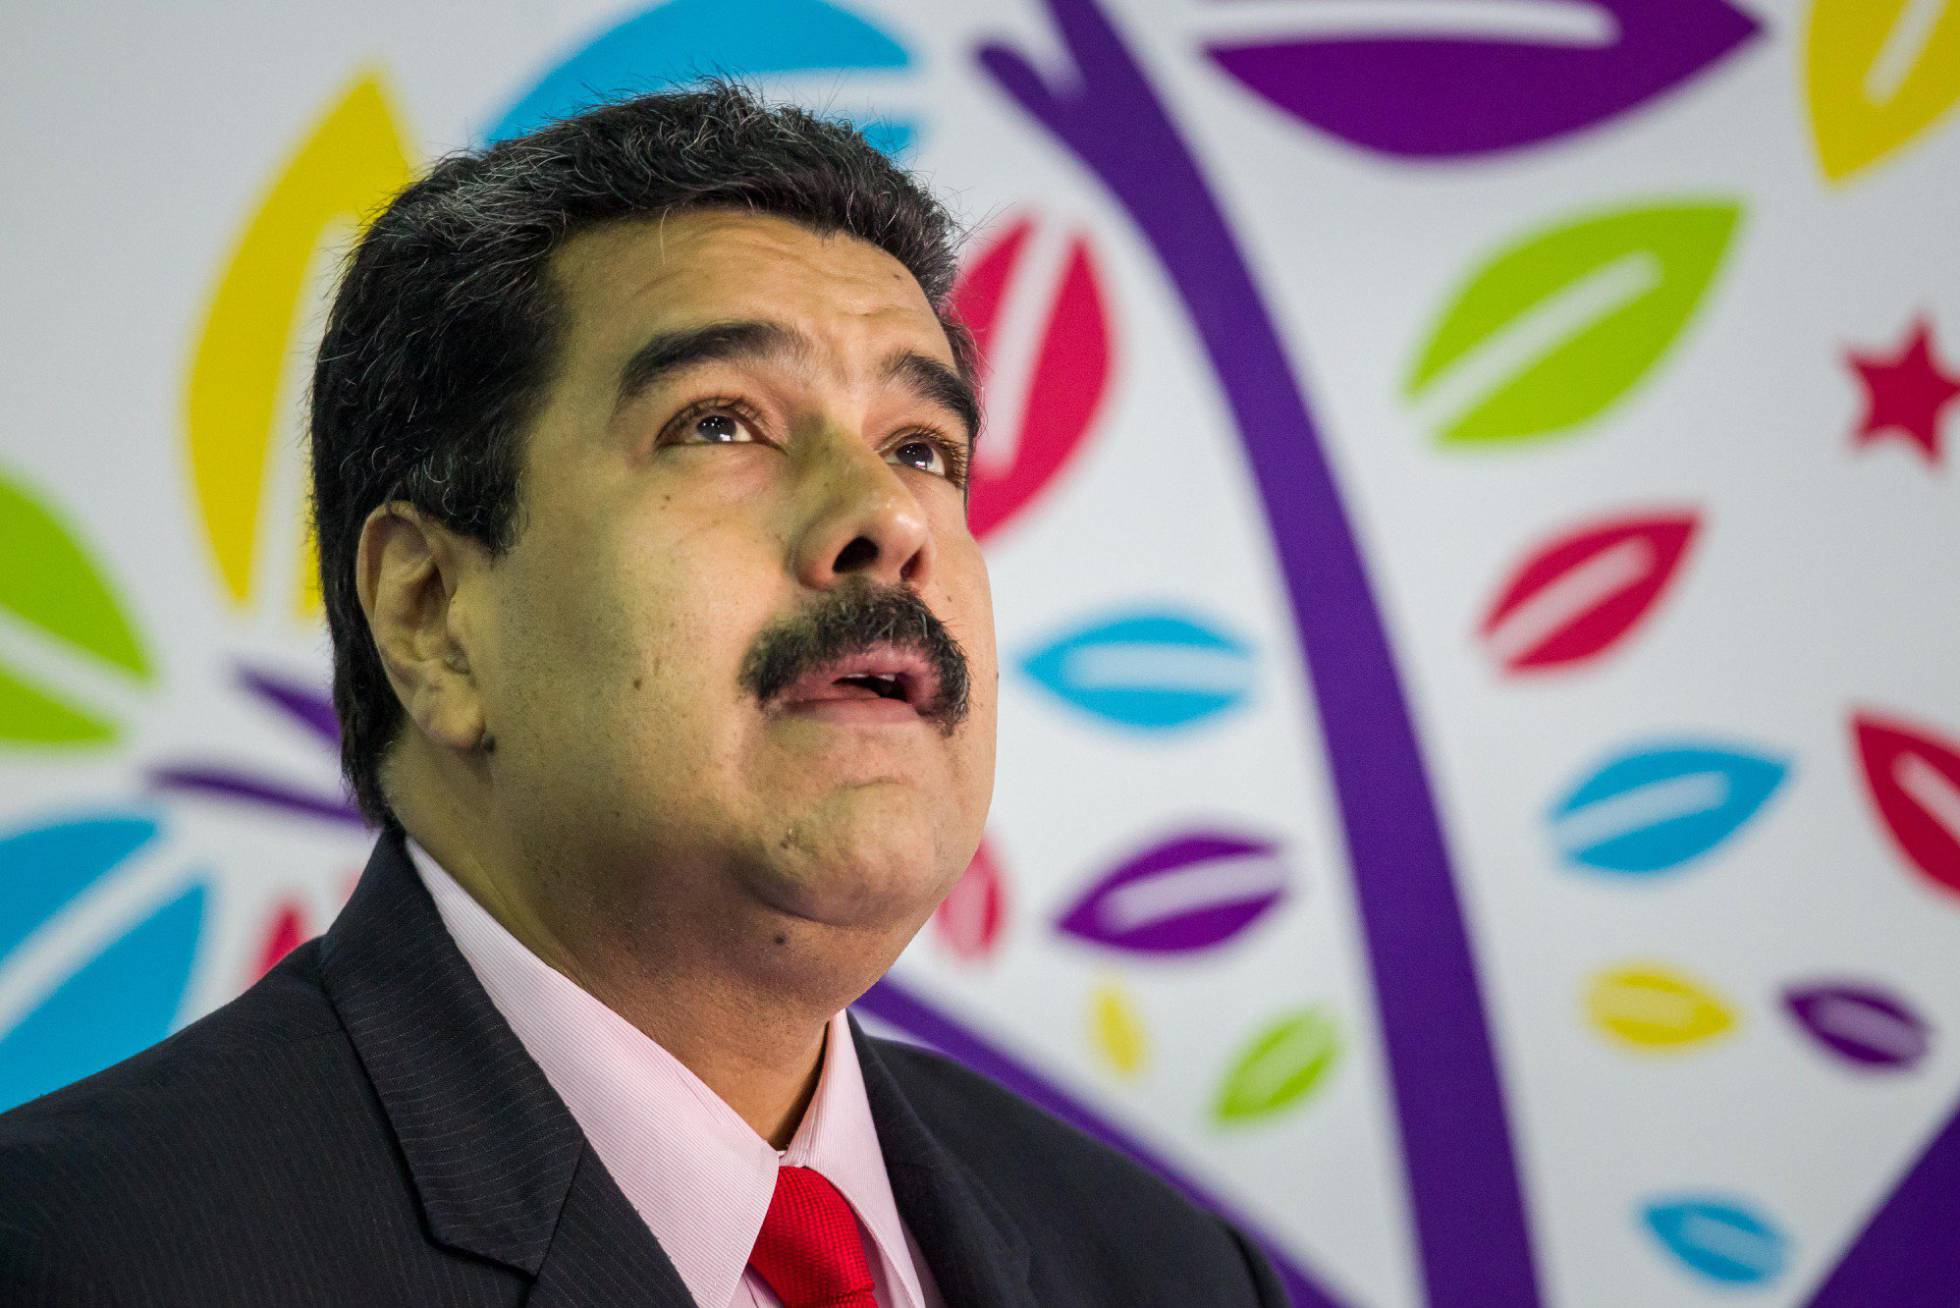  “Peor que Obama no será”, dice Maduro sobre llegada de Donald Trump